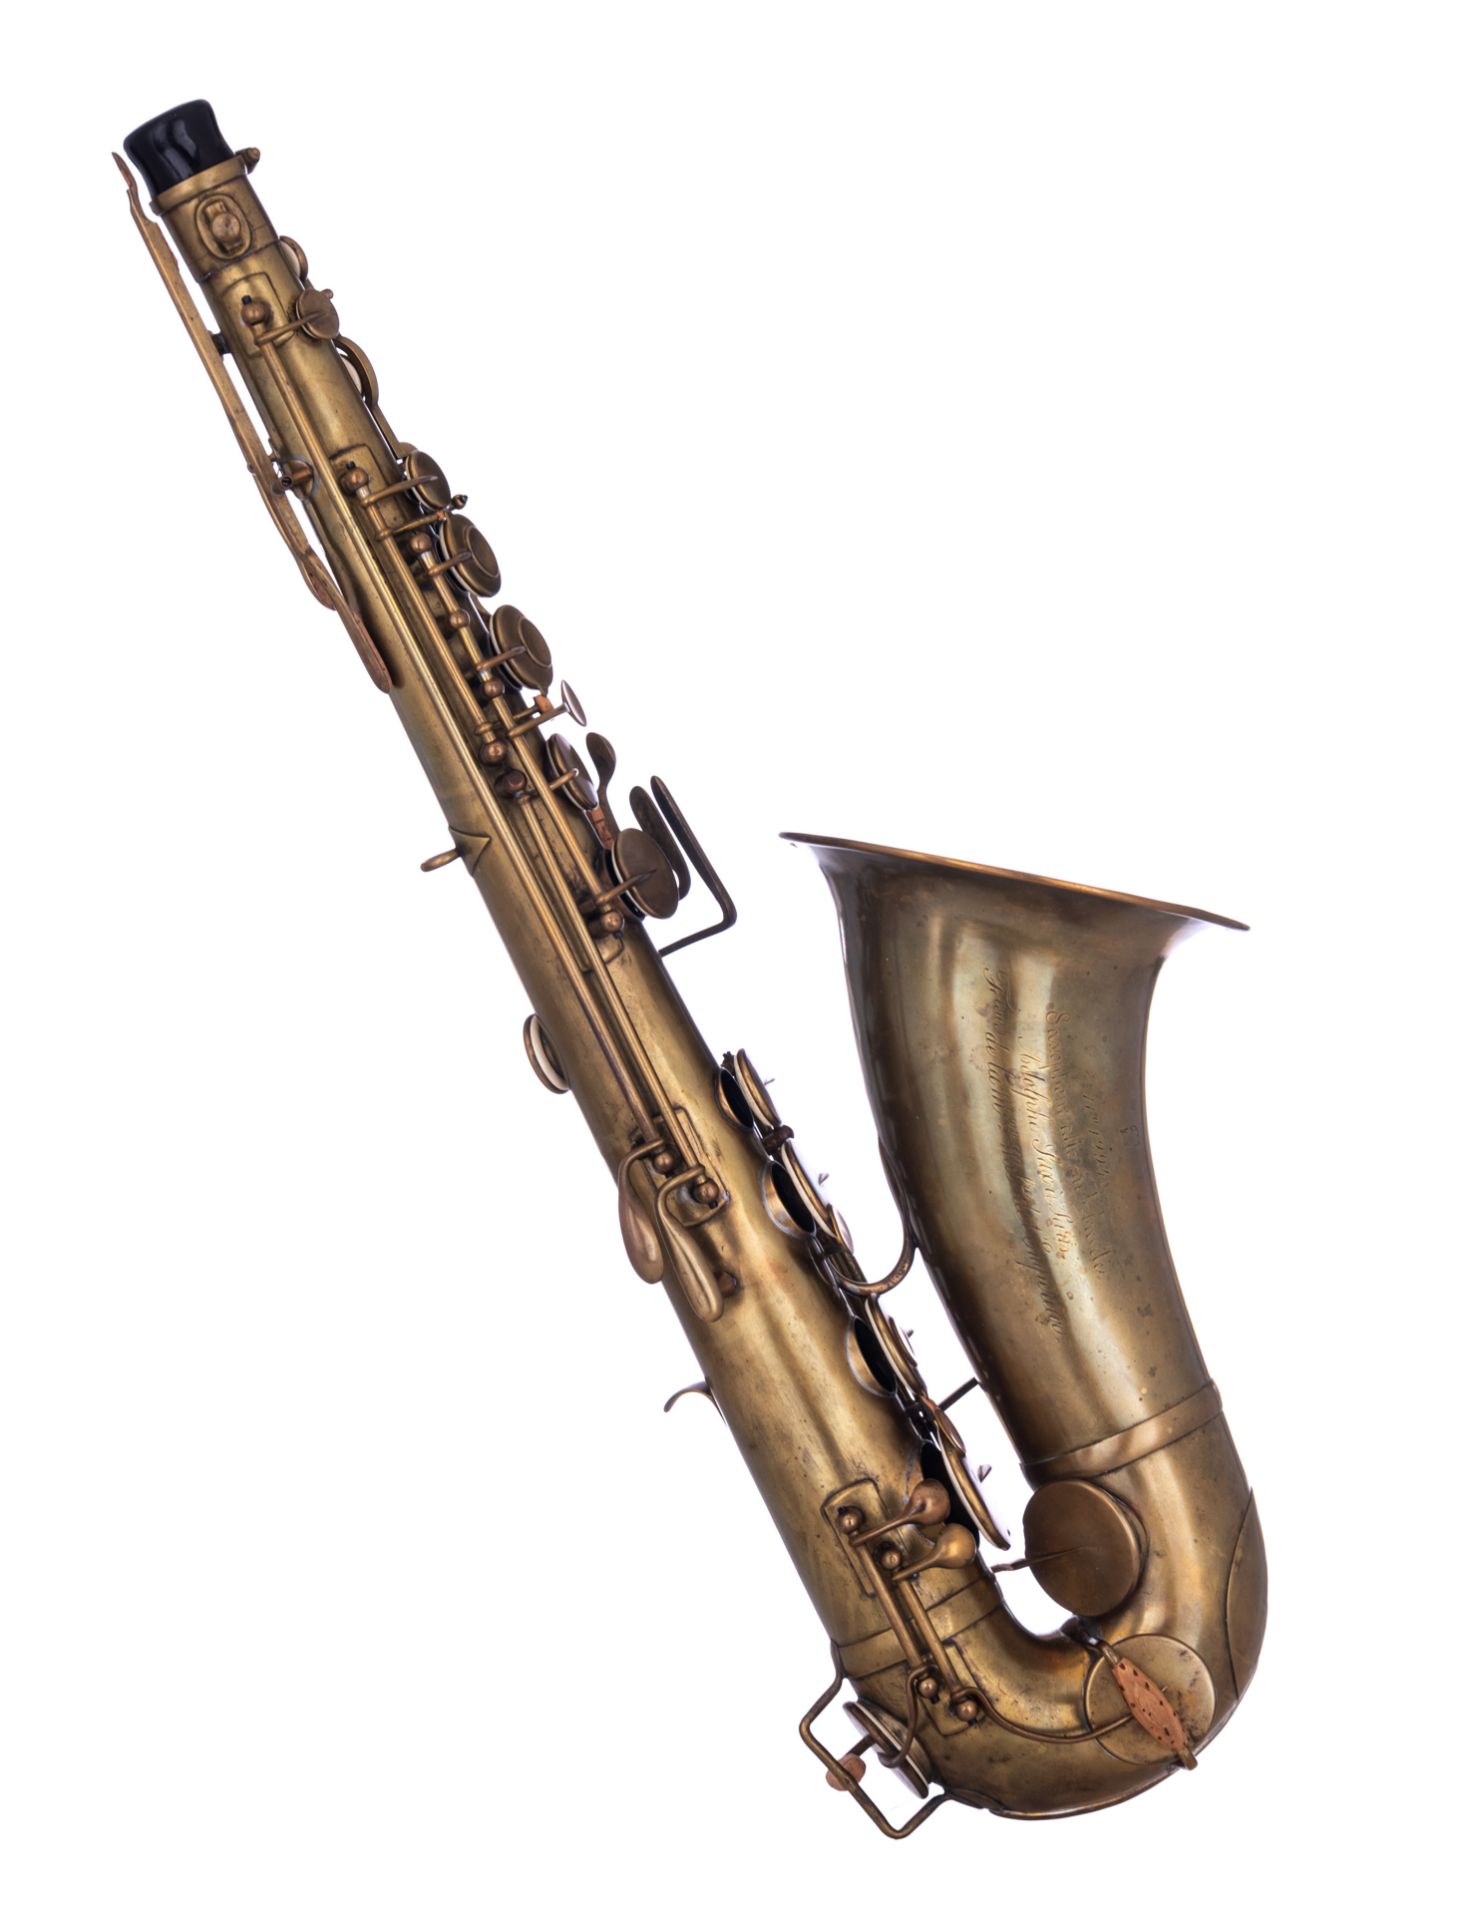 A rare MIB bréveté alto saxophone, serailnr. 12948, date of construction 1855, H 61,5 cm - Image 16 of 54